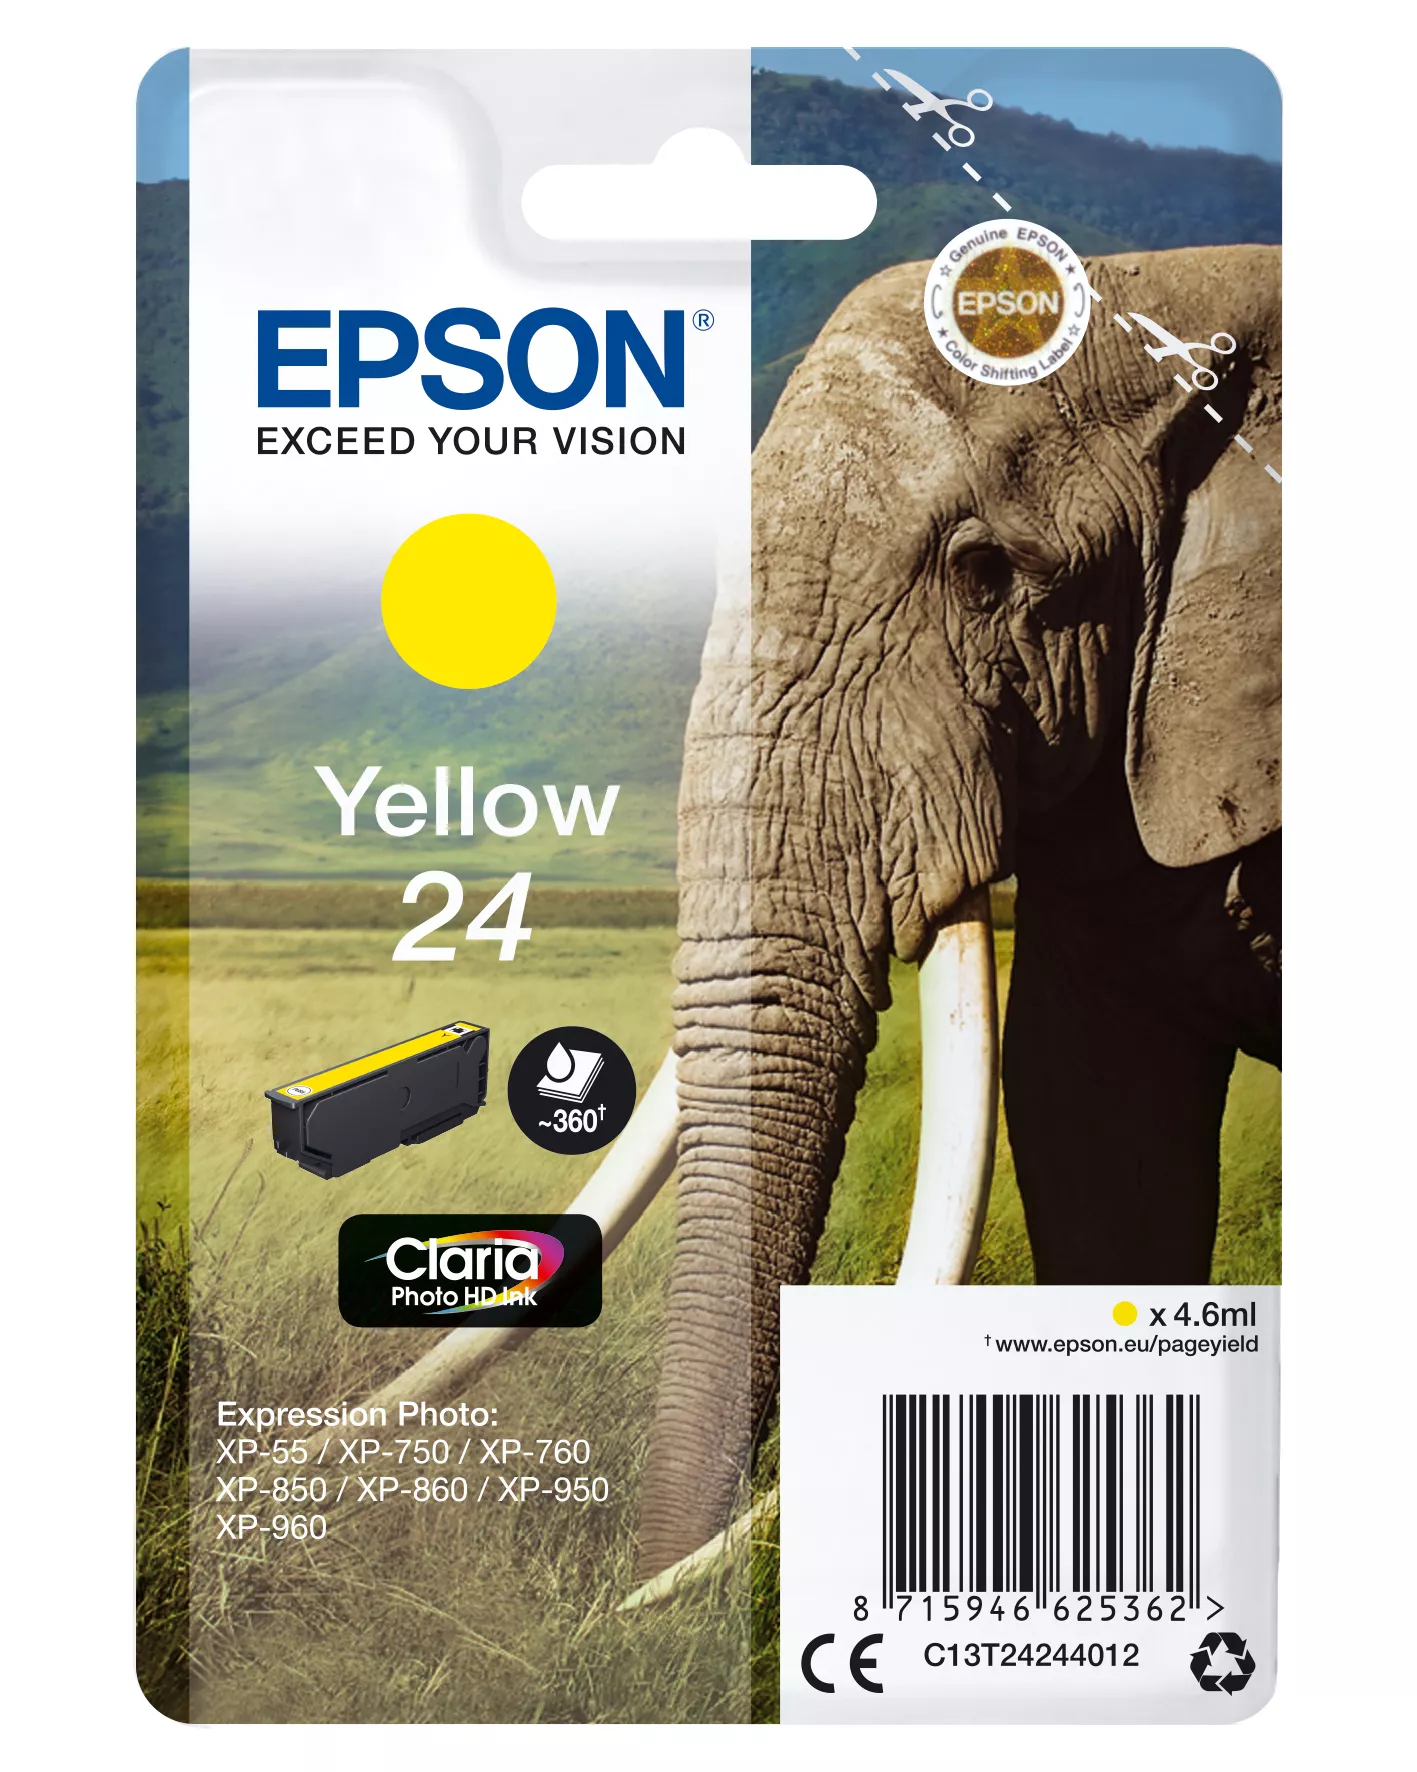 Vente EPSON 24 cartouche encre jaune capacité standard 4.6ml 360 au meilleur prix